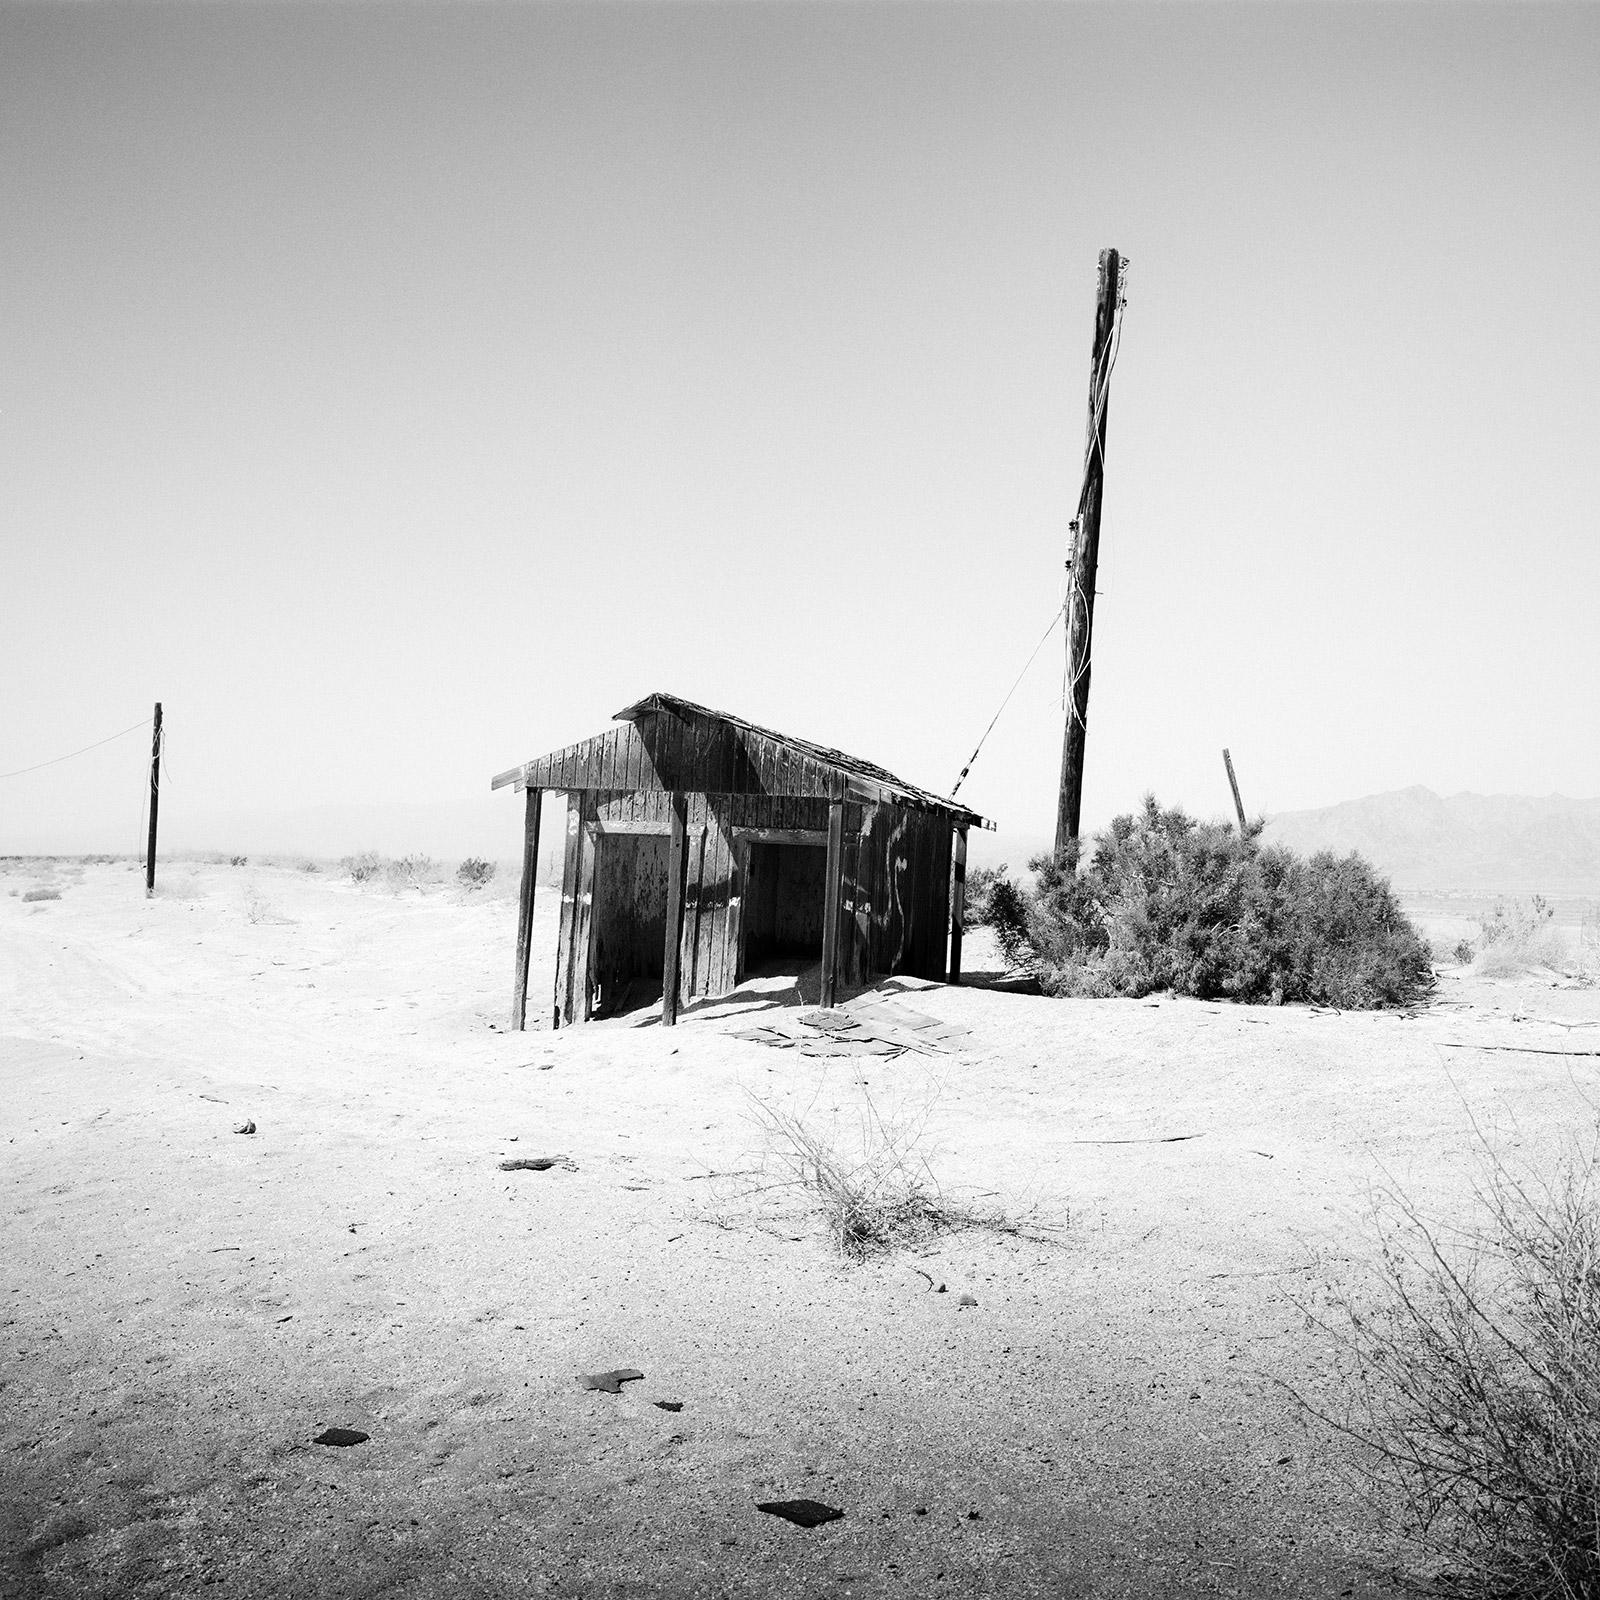 Abandoned Hut, désert, Californie, États-Unis, photographie en noir et blanc, paysage